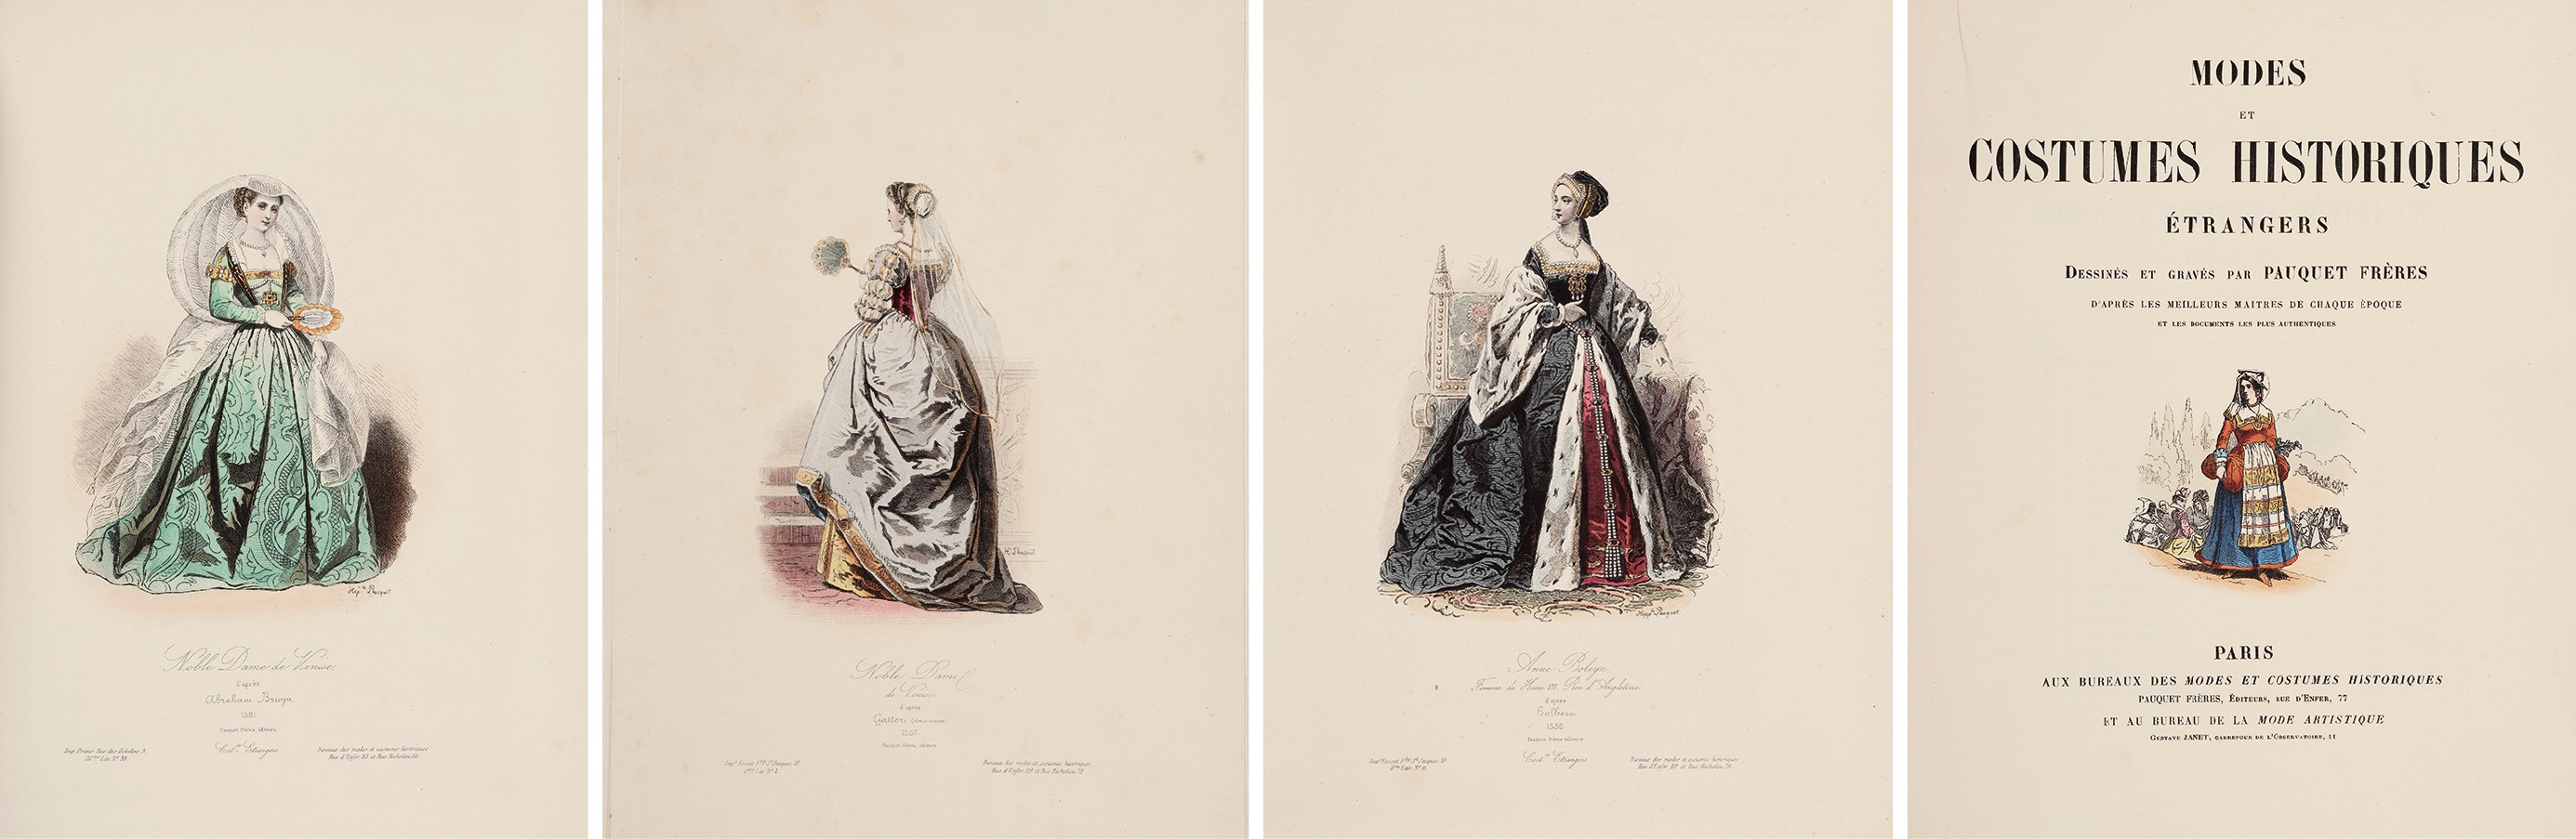 法国中世纪时装版画集 1868年巴黎 Pauquet frères 出版